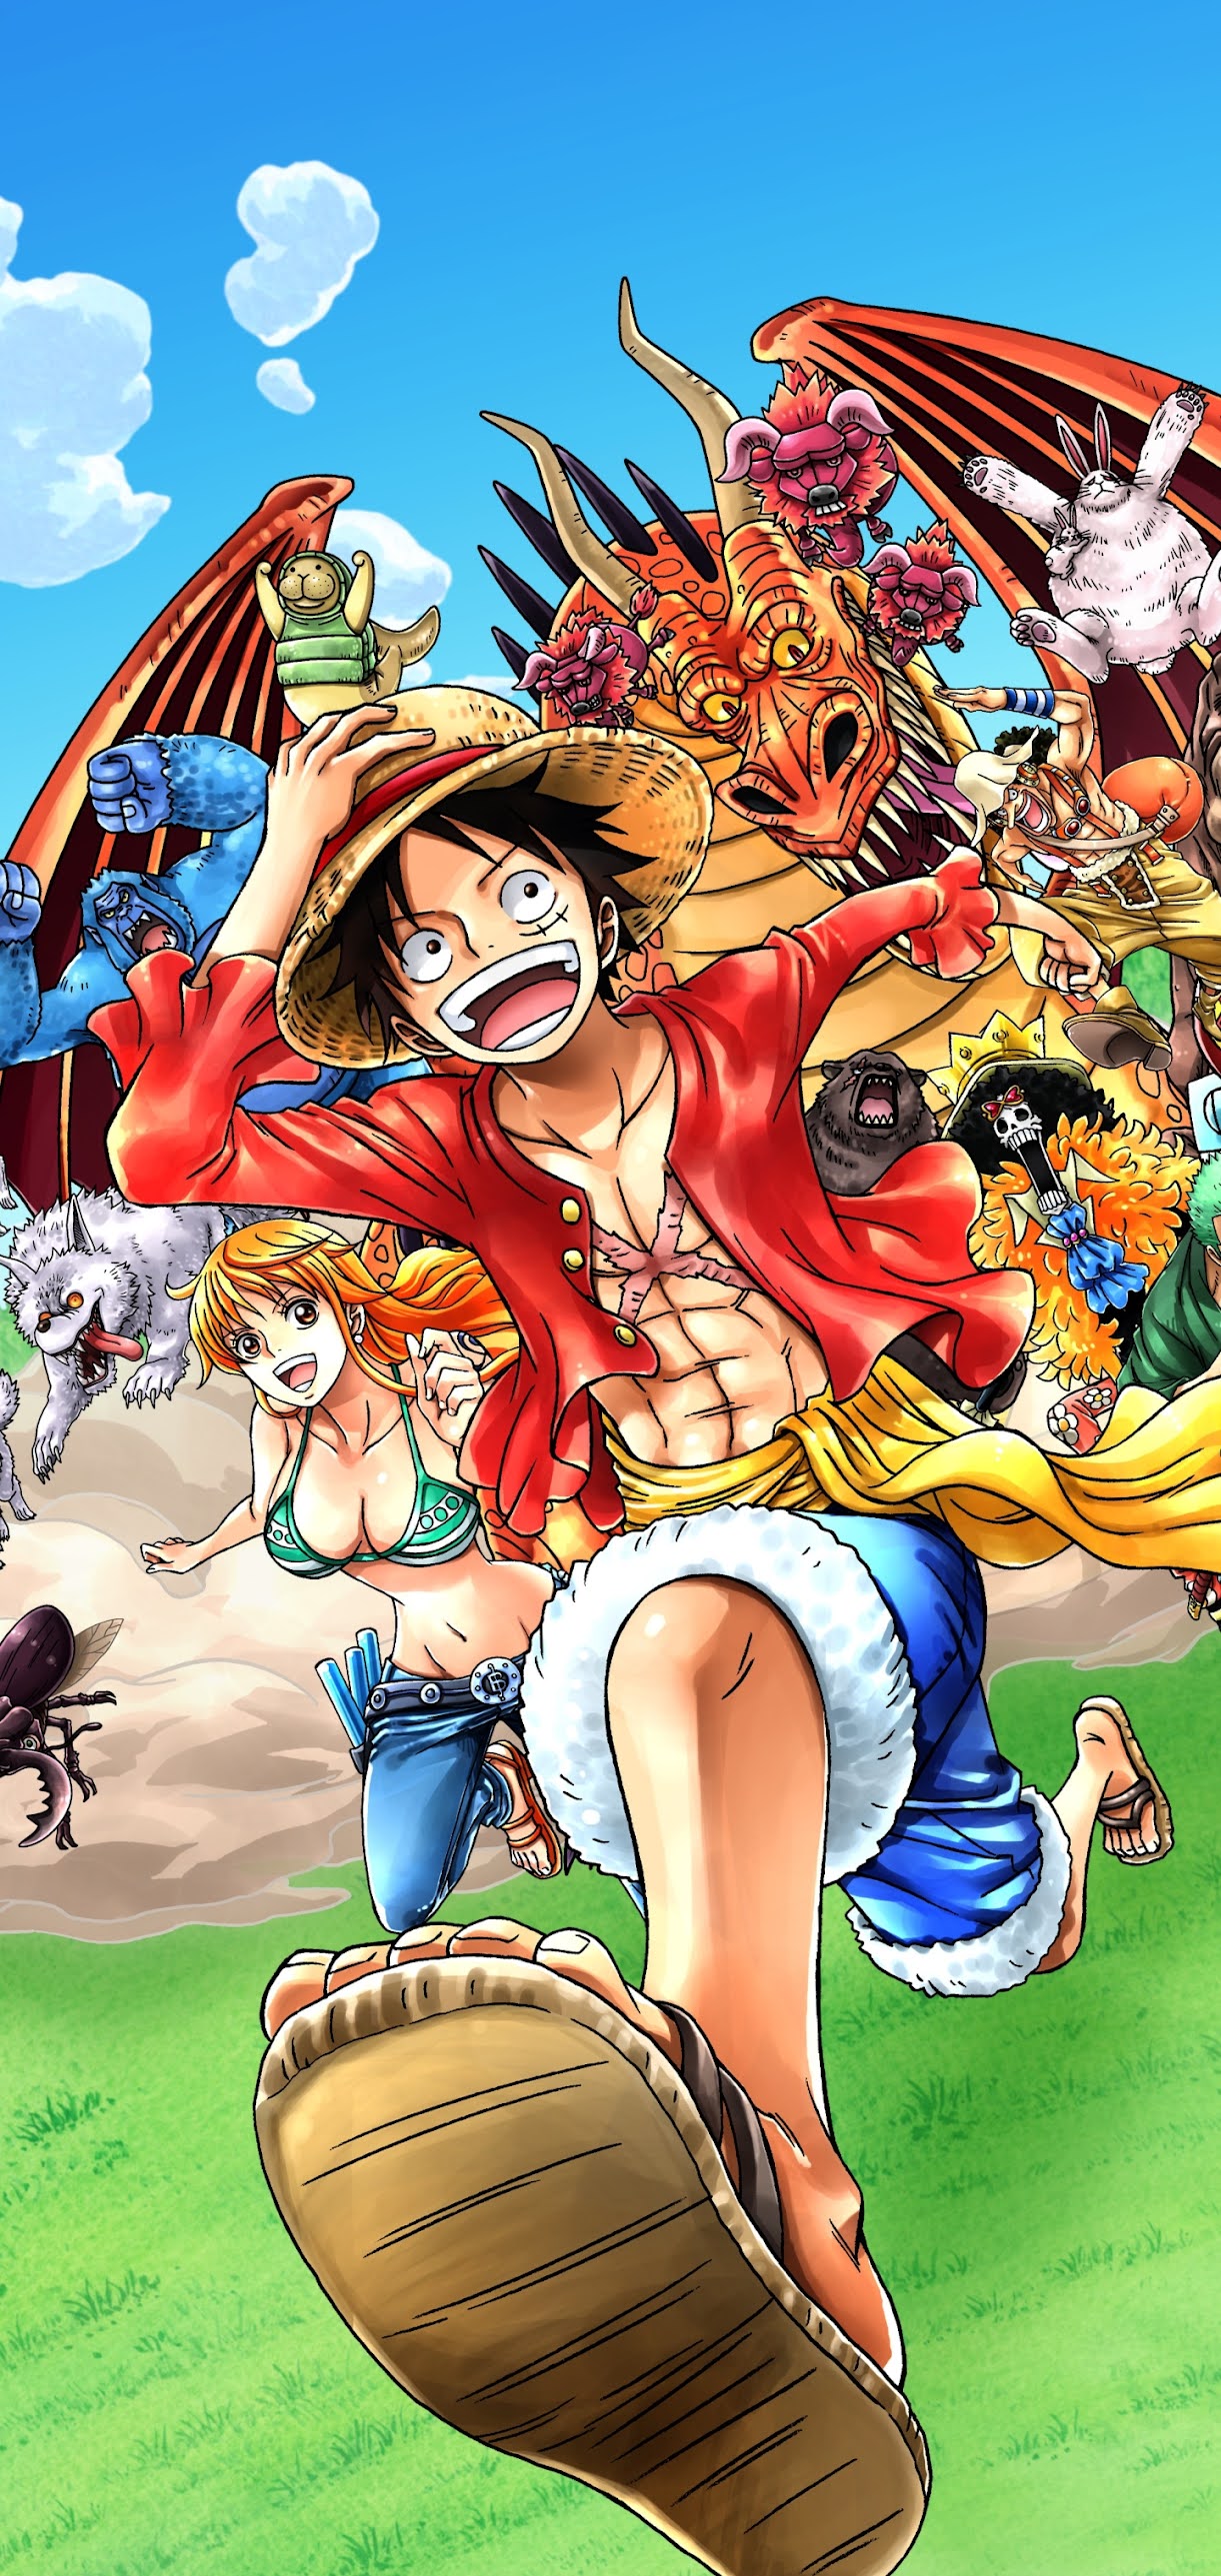 Hình nền One Piece  Hình nền Đảo Hải Tặc tuyệt đẹp  Downloadcomvn